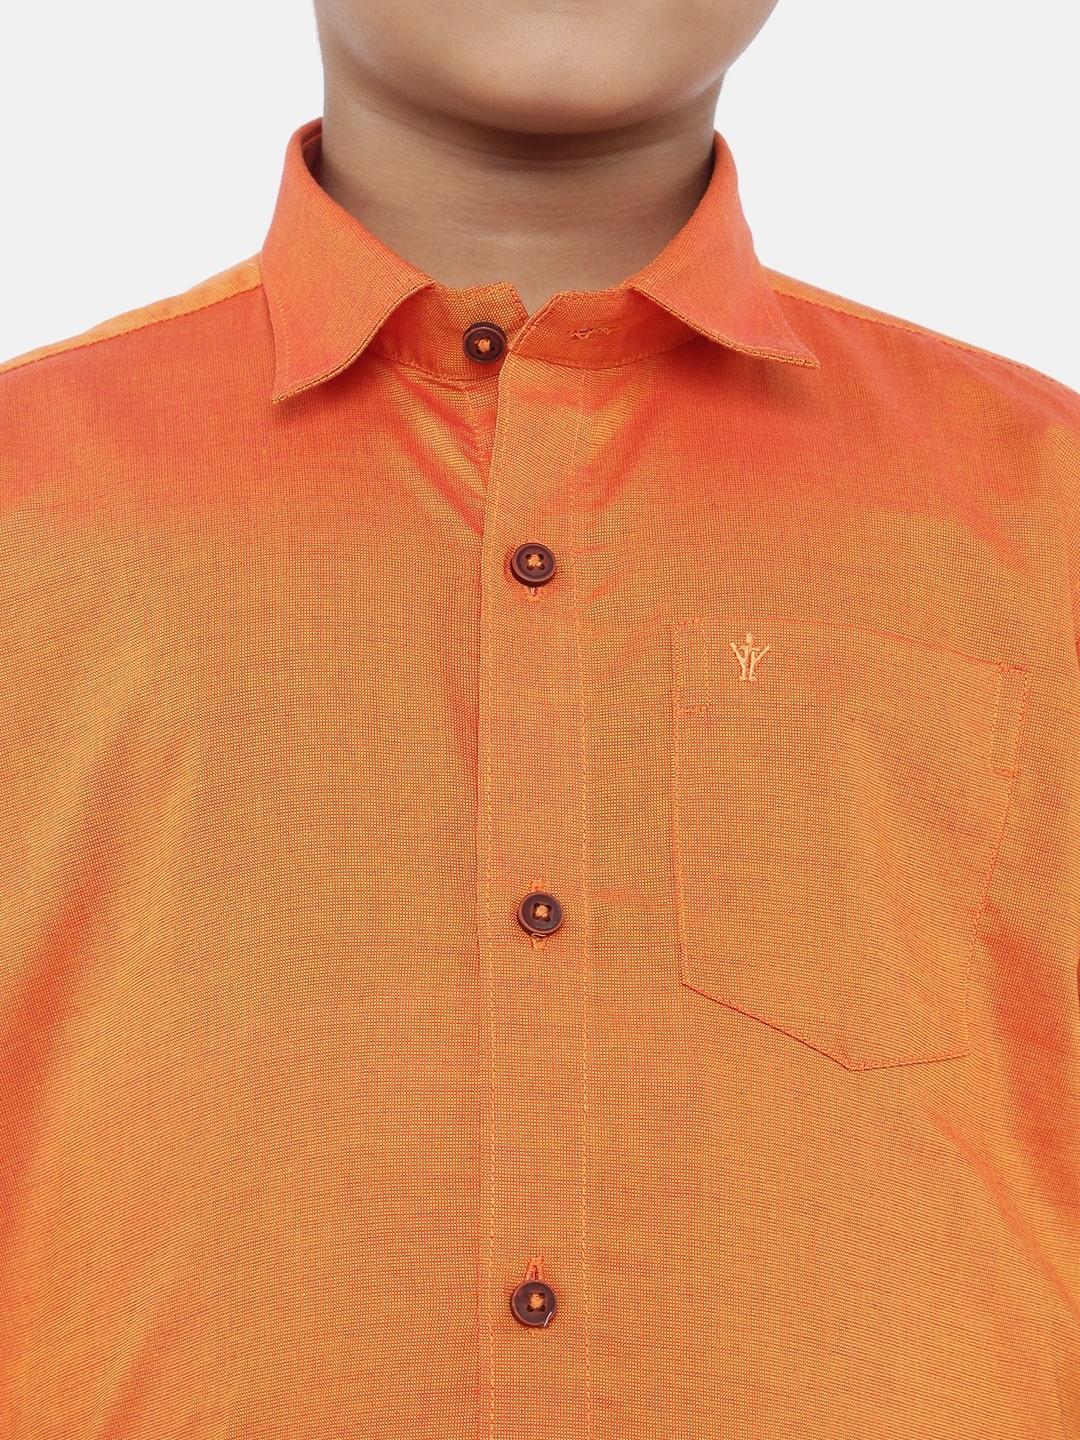 Ramraj Cotton | Ramraj Boys Orange Solid Shirt with White Dhoti 3